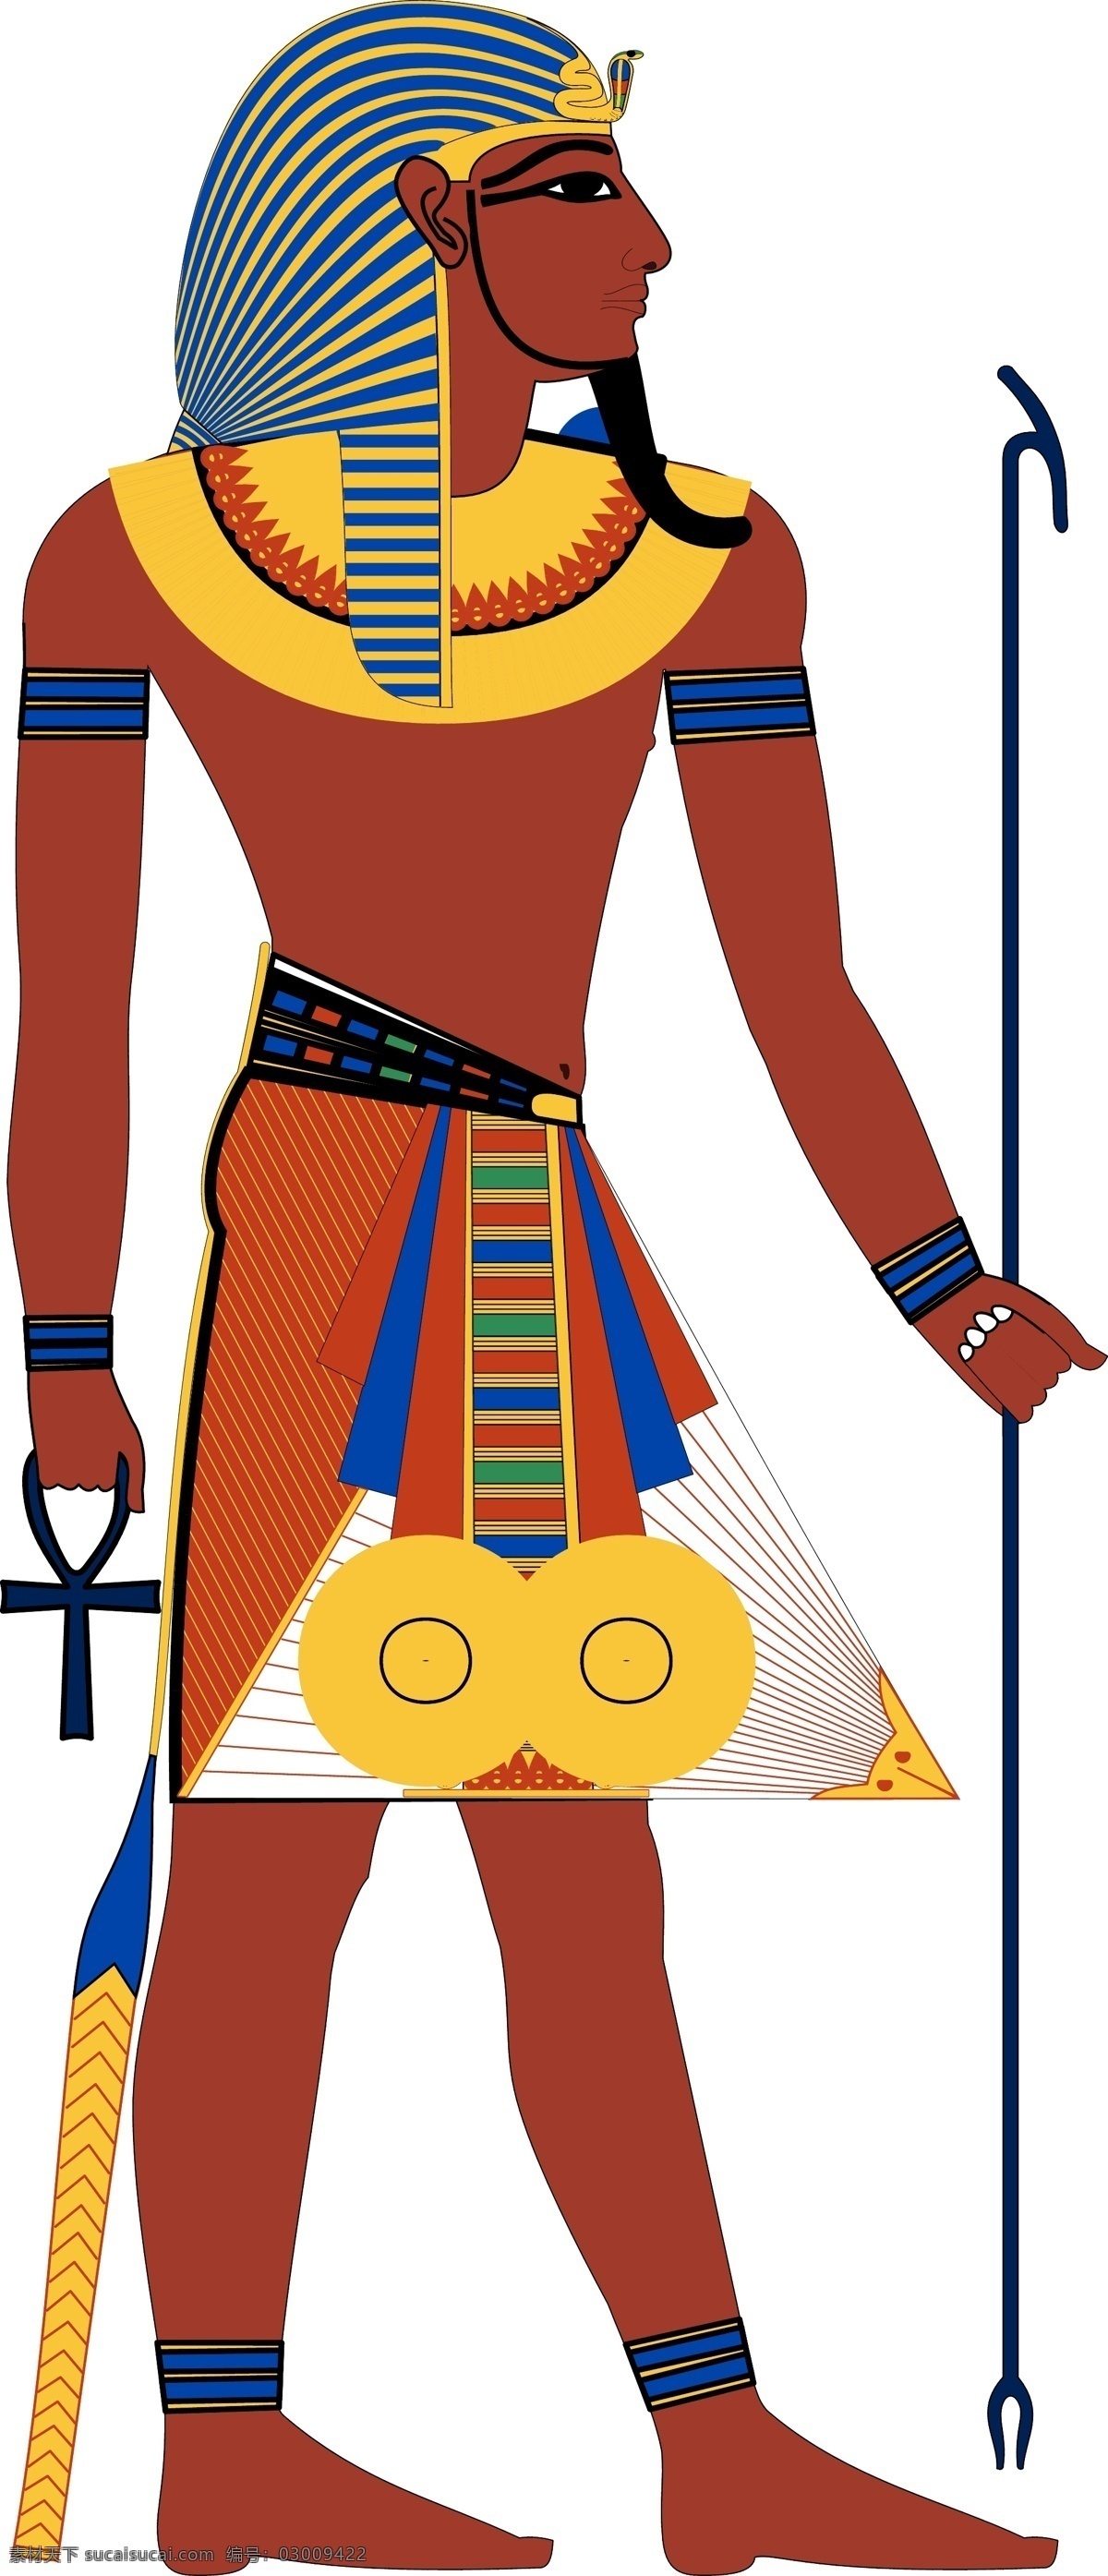 埃及 法老 矢量 古代 历史 战士 男 男性 象形文字 文化艺术 宗教信仰